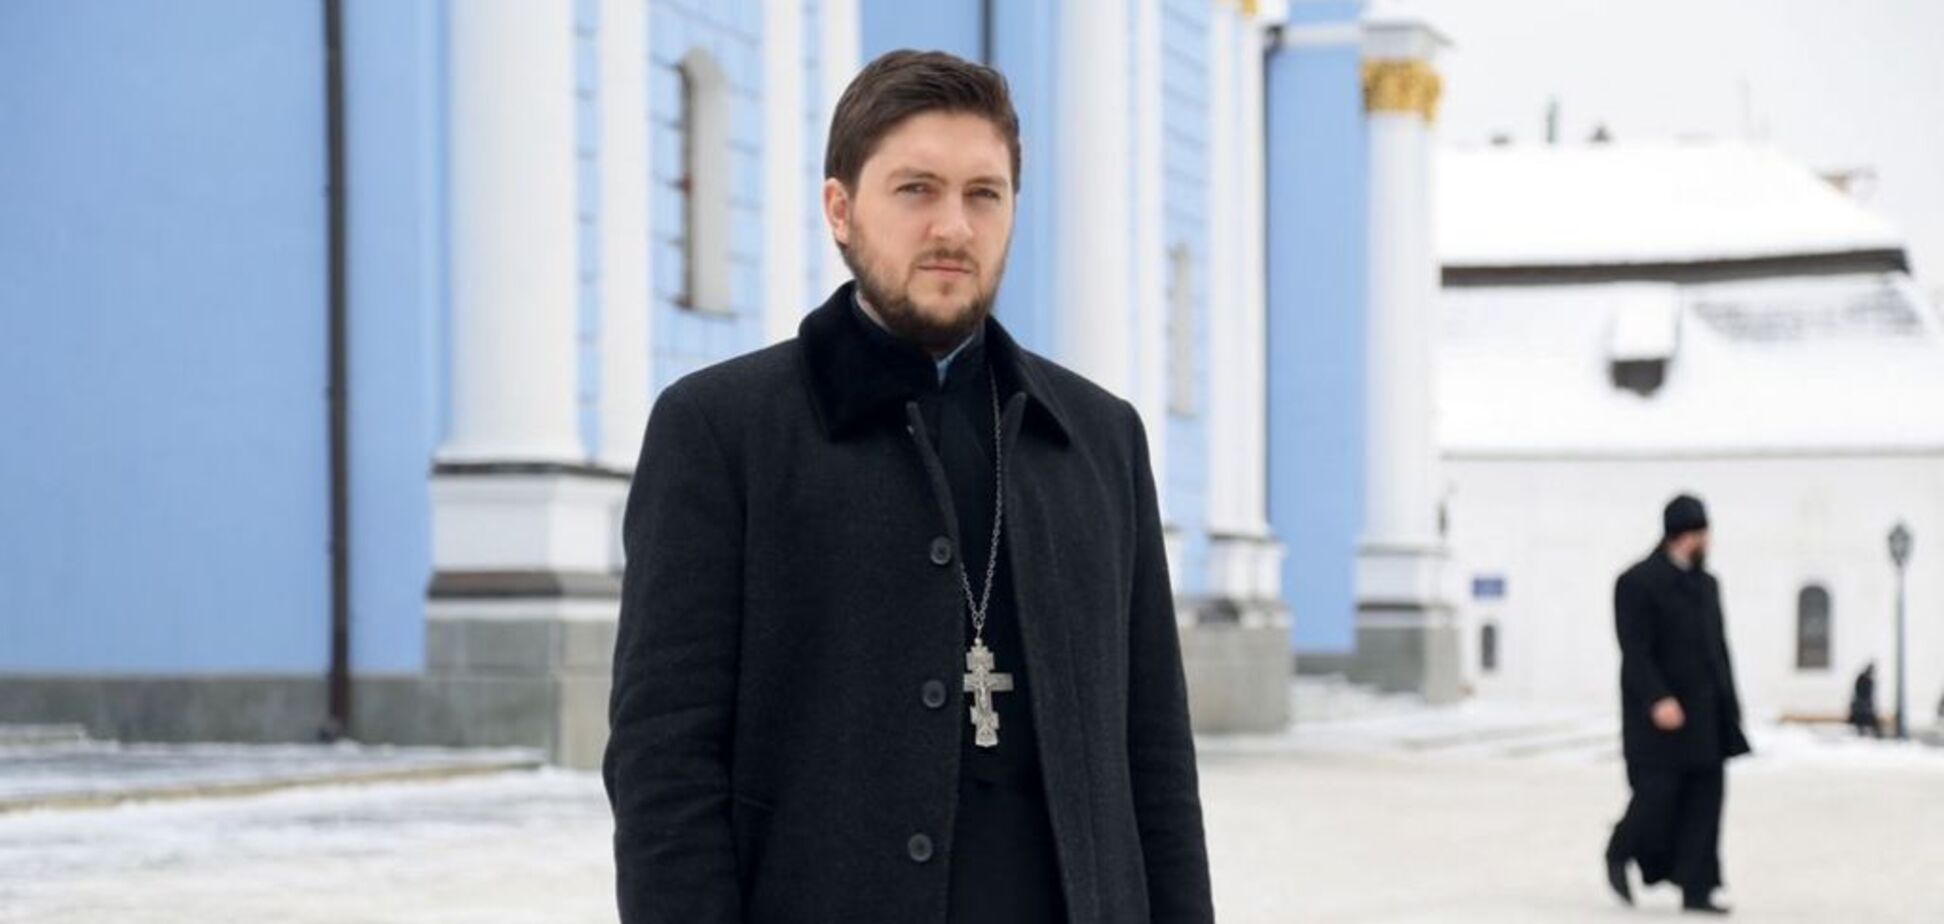 Бил в колокола, когда громили Майдан: появилось знаковое фото священника с Томосом 